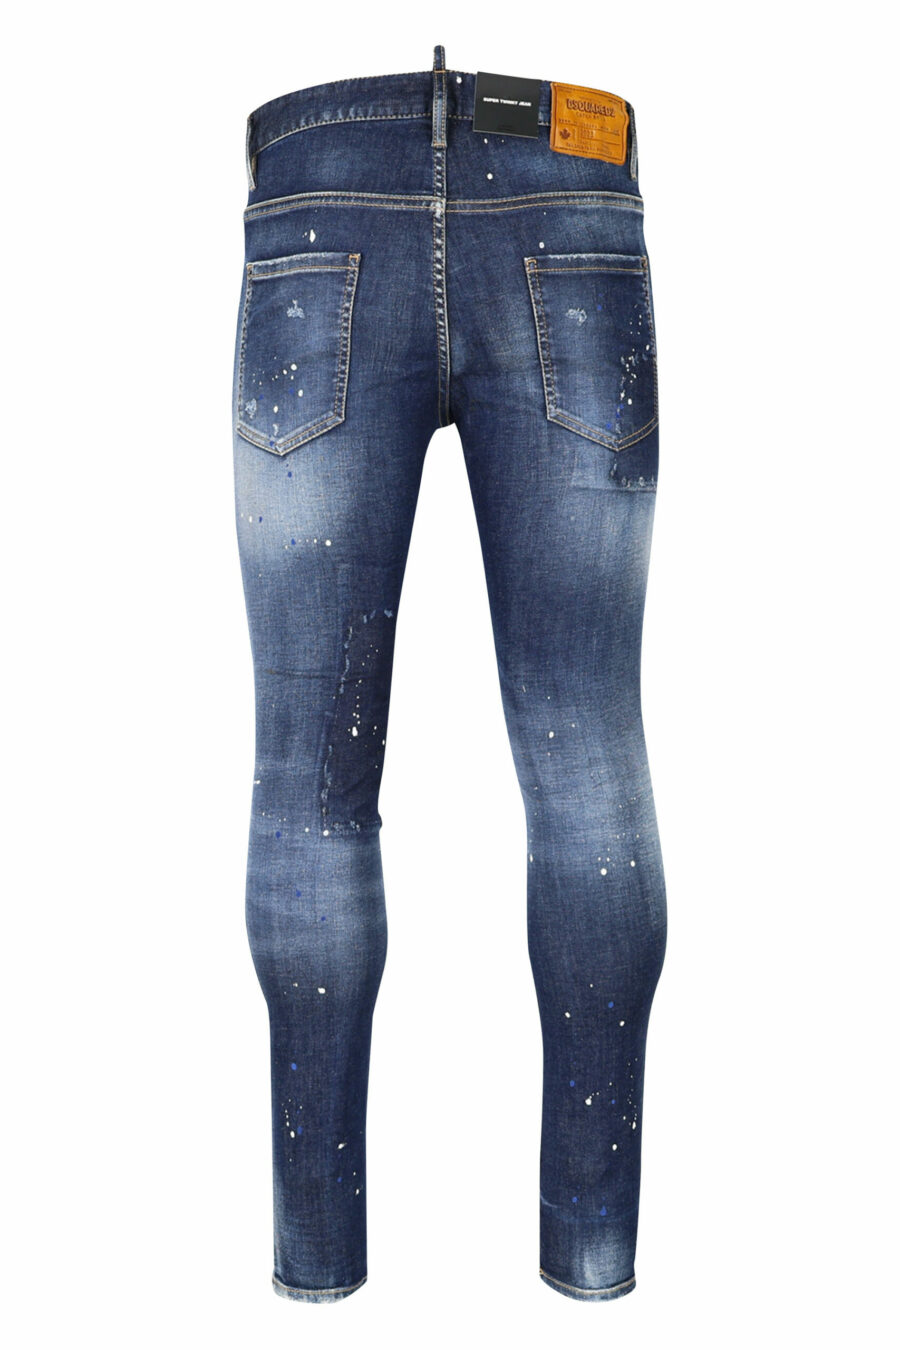 Pantalón vaquero "super twinky jean" azul con parche y desgastado - 8054148104863 2 scaled